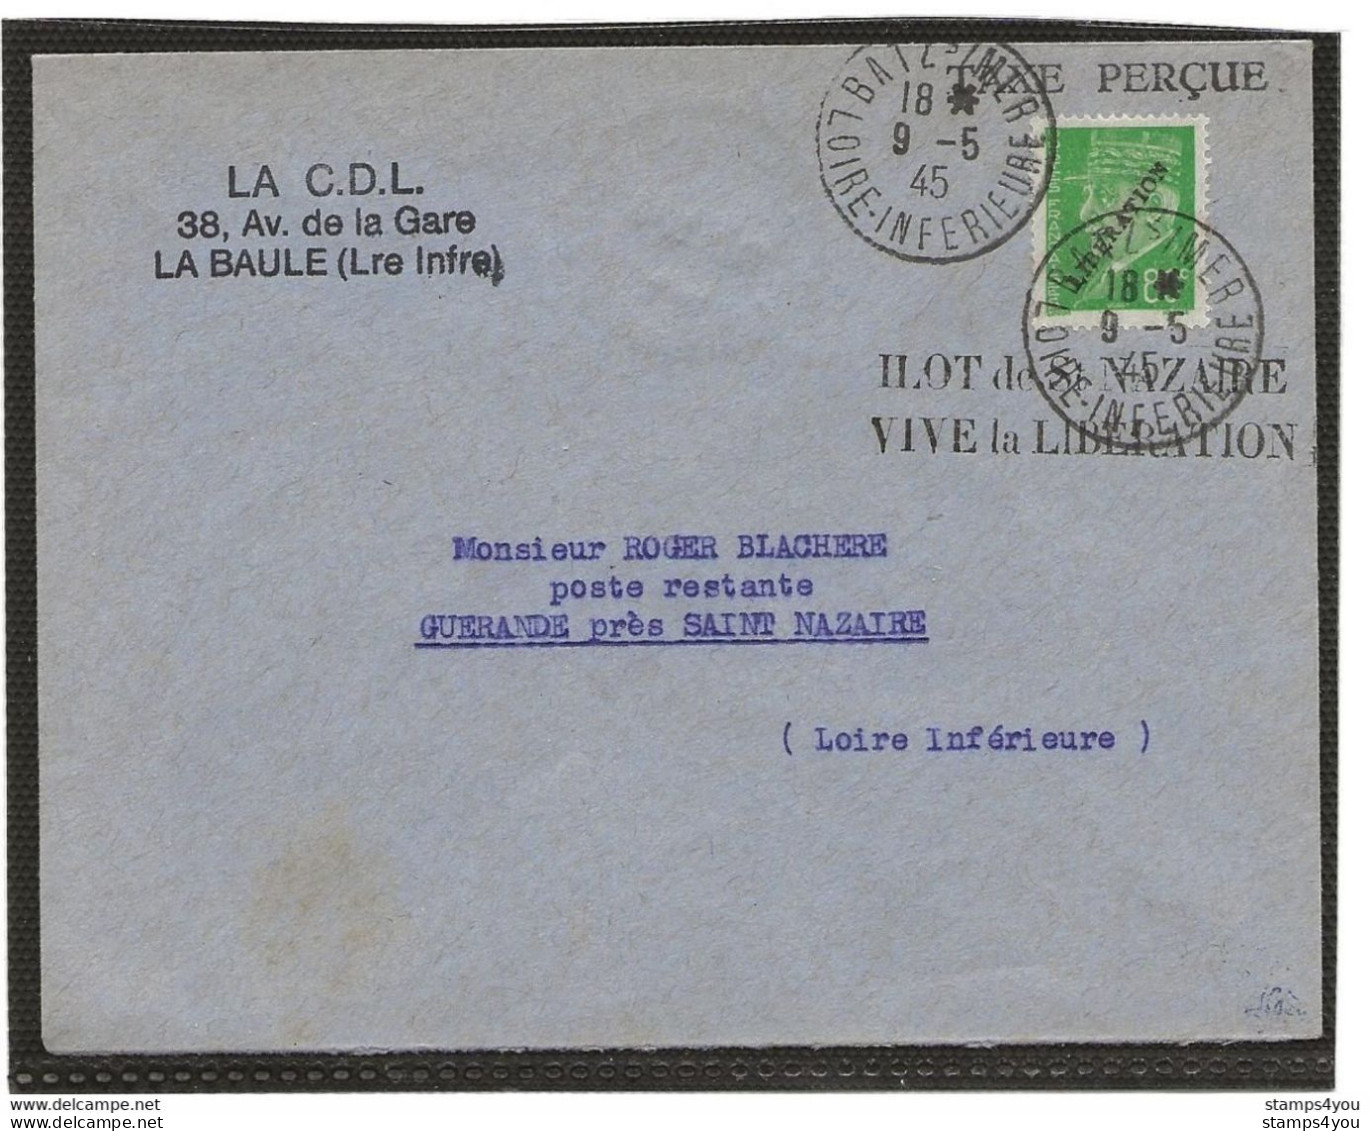 150 - 76 - Superbe Enveloppe Avec Timbre Libération - Ilot De St Nazaire Vive La Libération 19.5.1945 - WW2 (II Guerra Mundial)